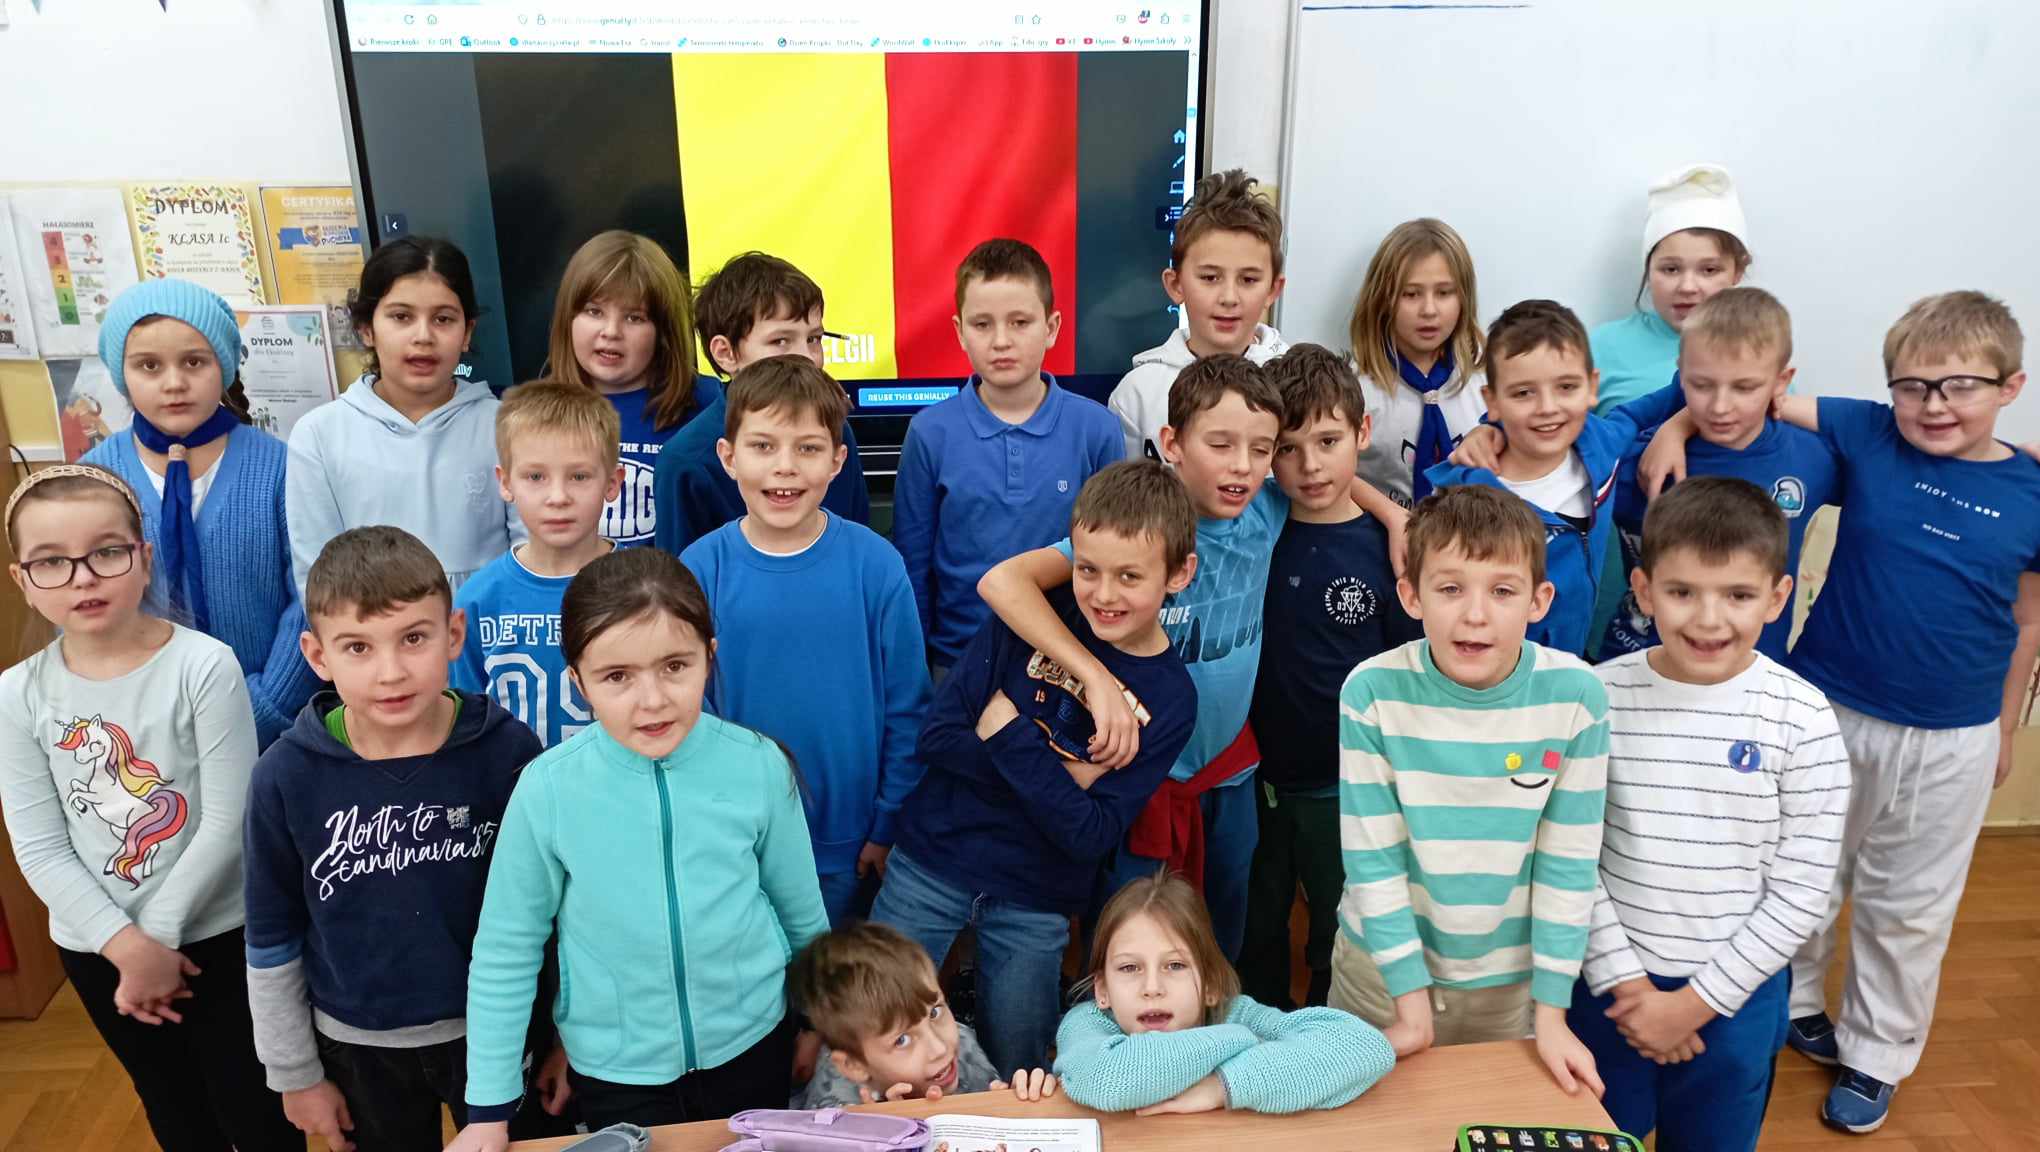 23 uczniów klasy 2c przebranych za Smerfy stoi lub kuca w sali na tle tablicy multimedialnej wyświetlającej flagę Belgii.